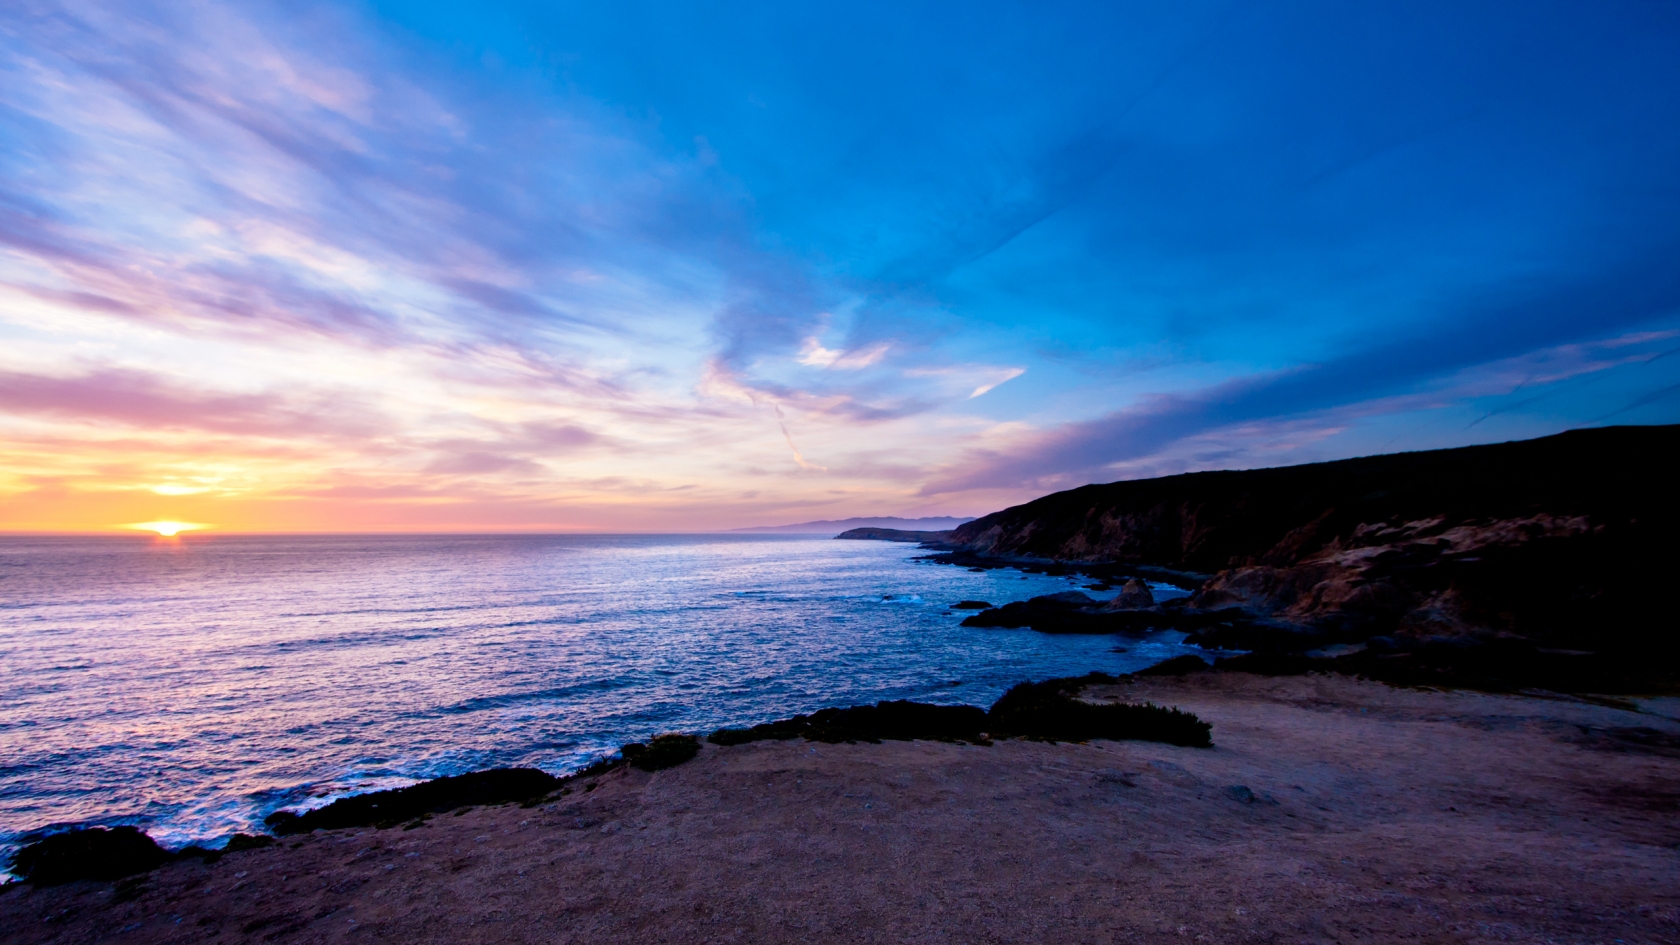 Bodega Head Sunset for 1680 x 945 HDTV resolution